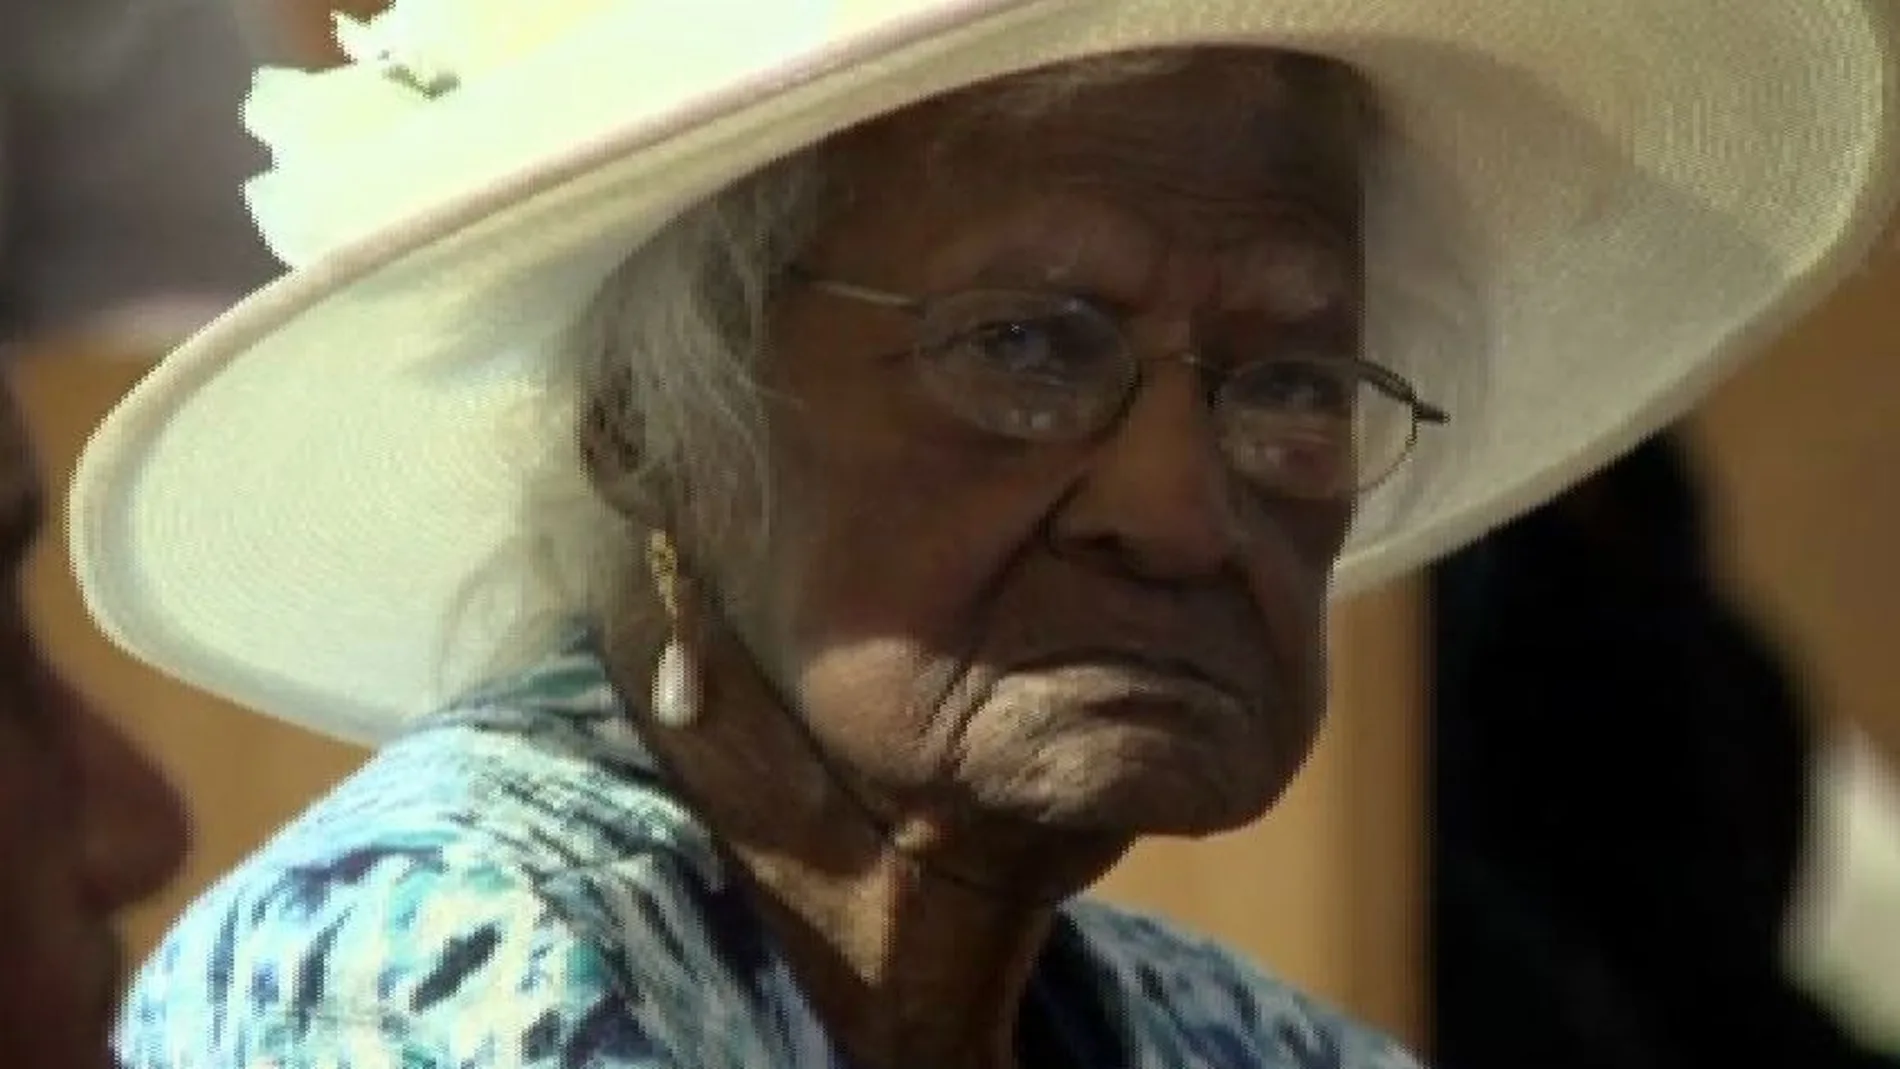 Cumple 115 años y es la segunda persona más anciana del mundo